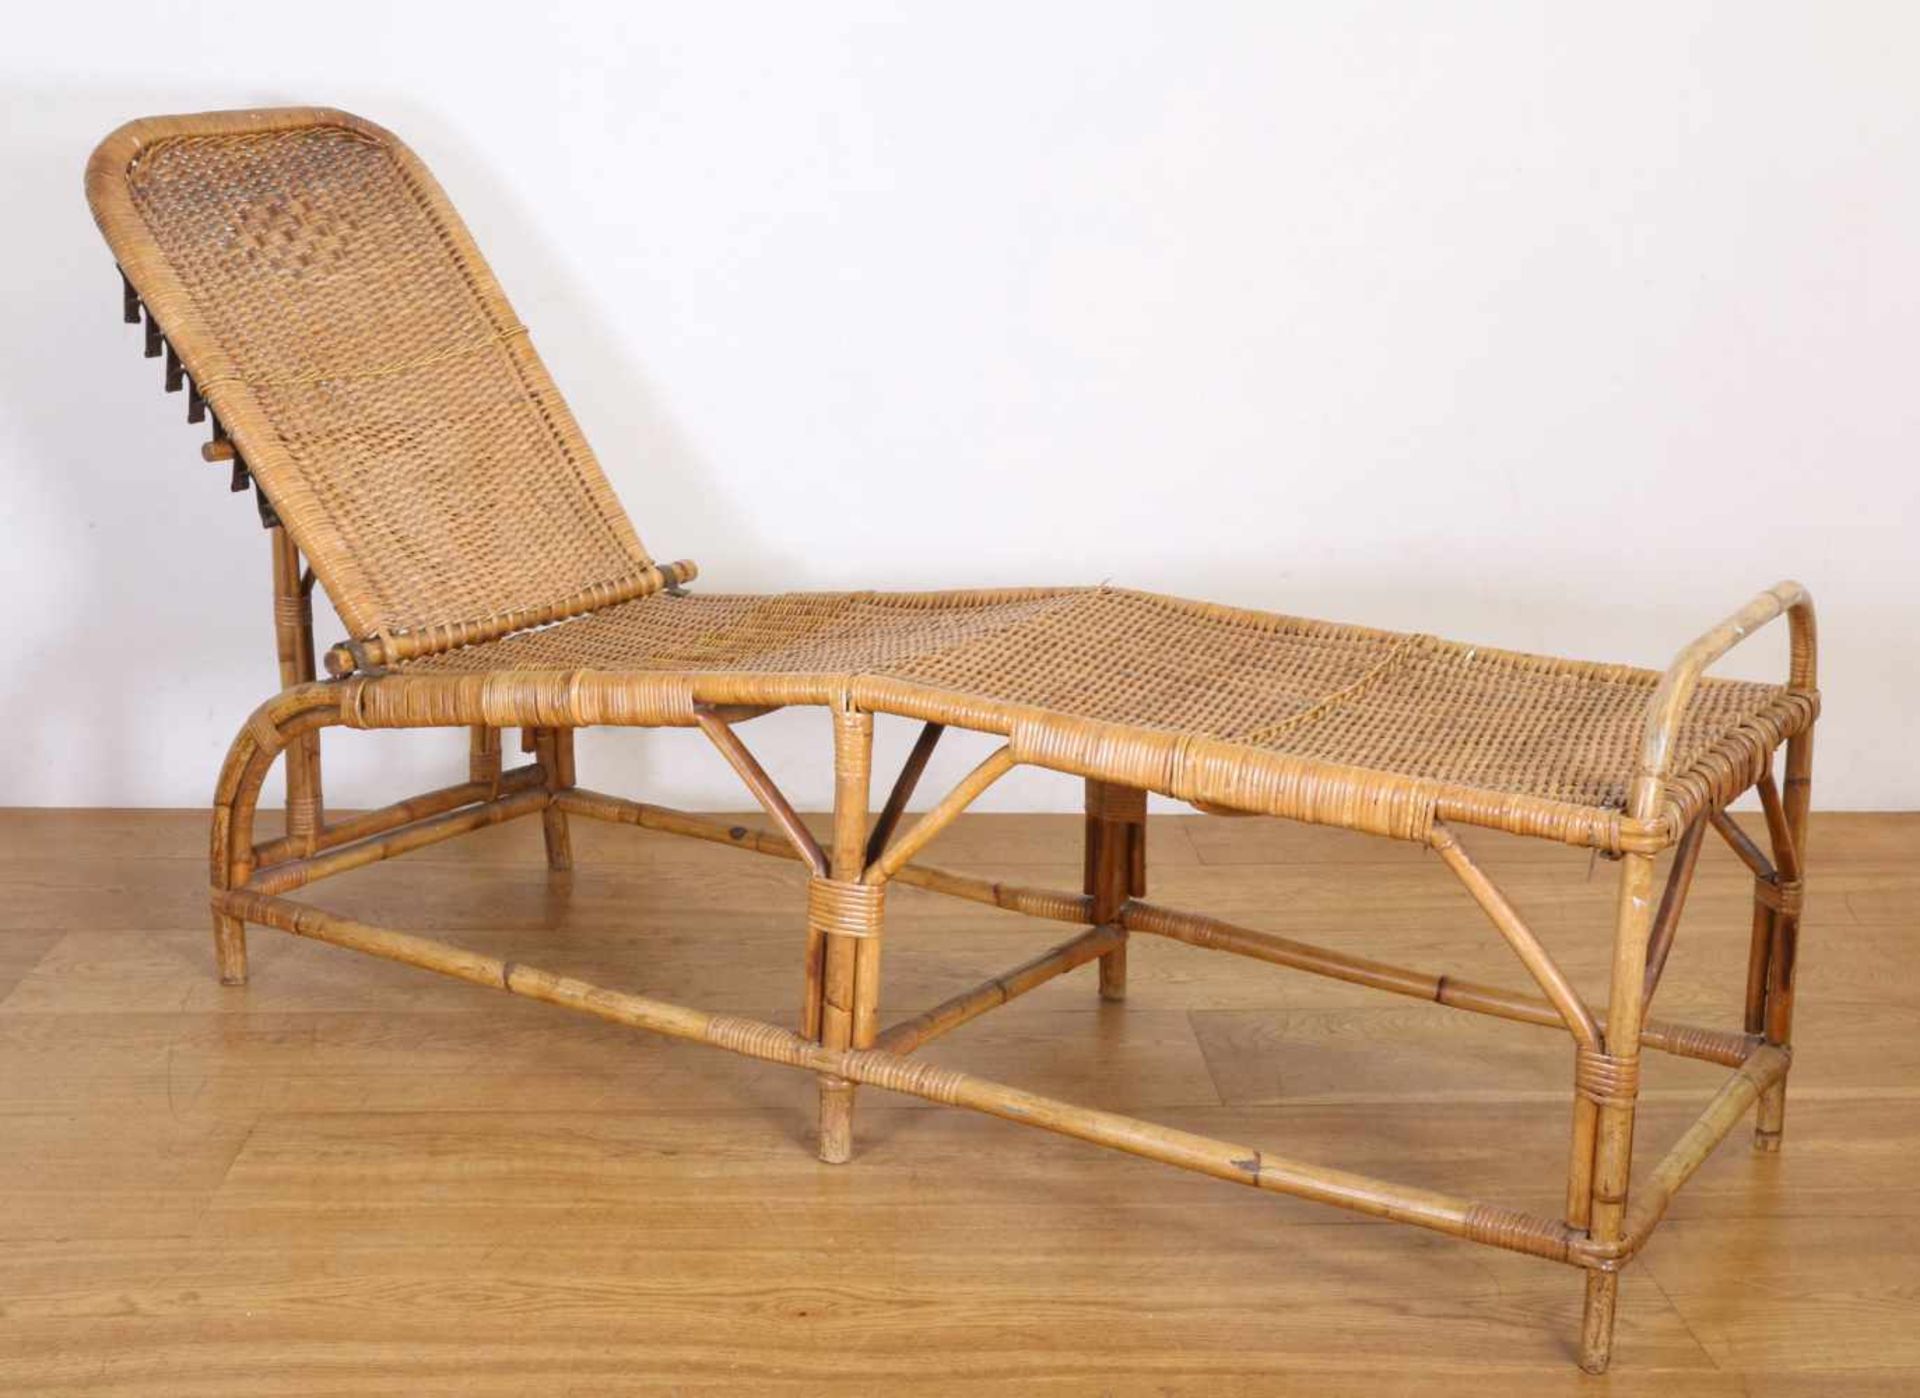 Bamboe en rotan deckchair, Holland Amerika Lijn, jaren ’30,met verstelbare rugleuning, l. 205 cm [